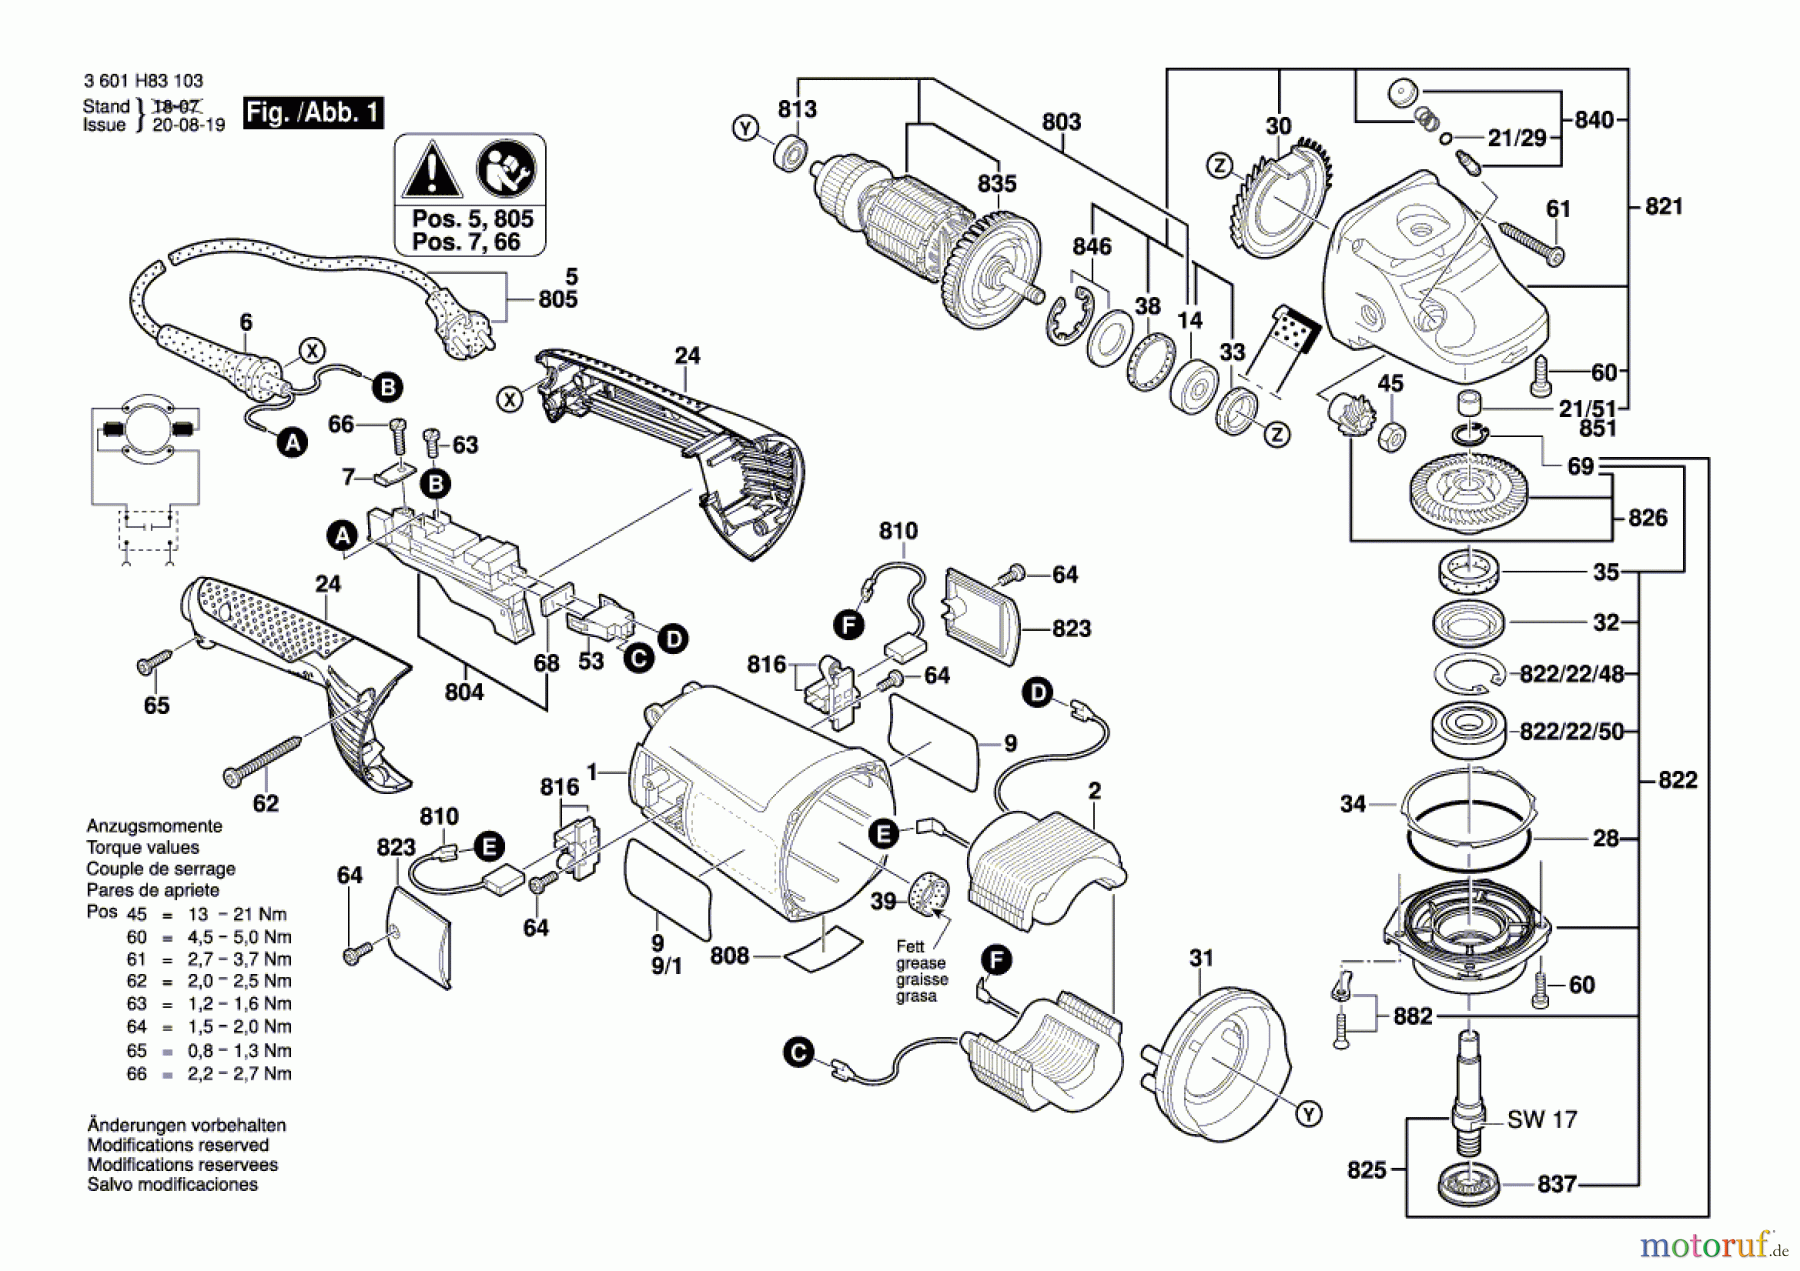  Bosch Werkzeug Winkelschleifer GWS 24-230H Seite 1